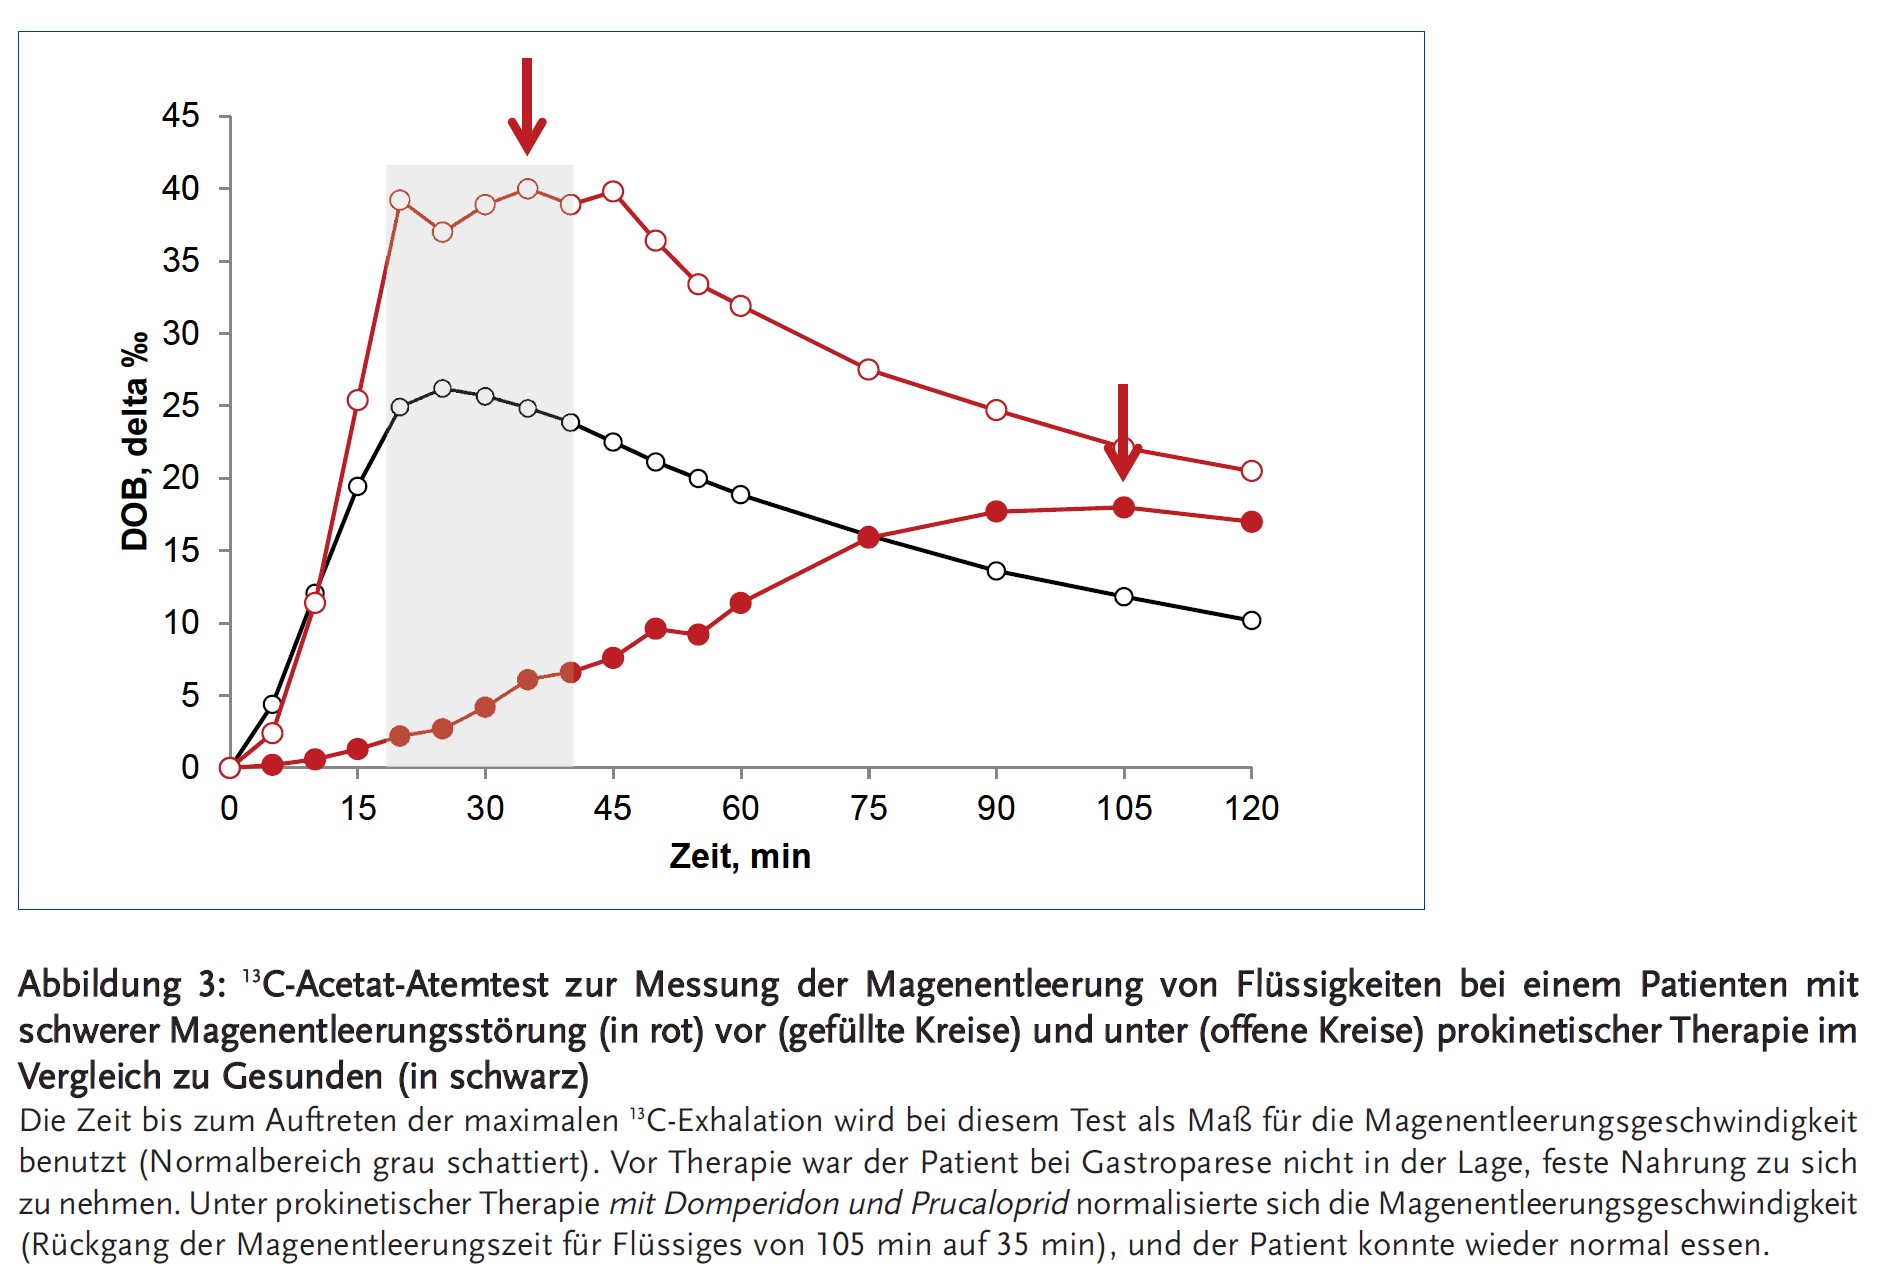 Abbildung 3: <sup>13</sup>C-Acetat-Atemtest zur Messung der Magenentleerung von Flüssigkeiten bei einem Patienten mit schwerer Magenentleerungsstörung (in rot) vor (gefüllte Kreise) und unter (offene Kreise) prokinetischer Therapie im Vergleich zu Gesunden (in schwarz)